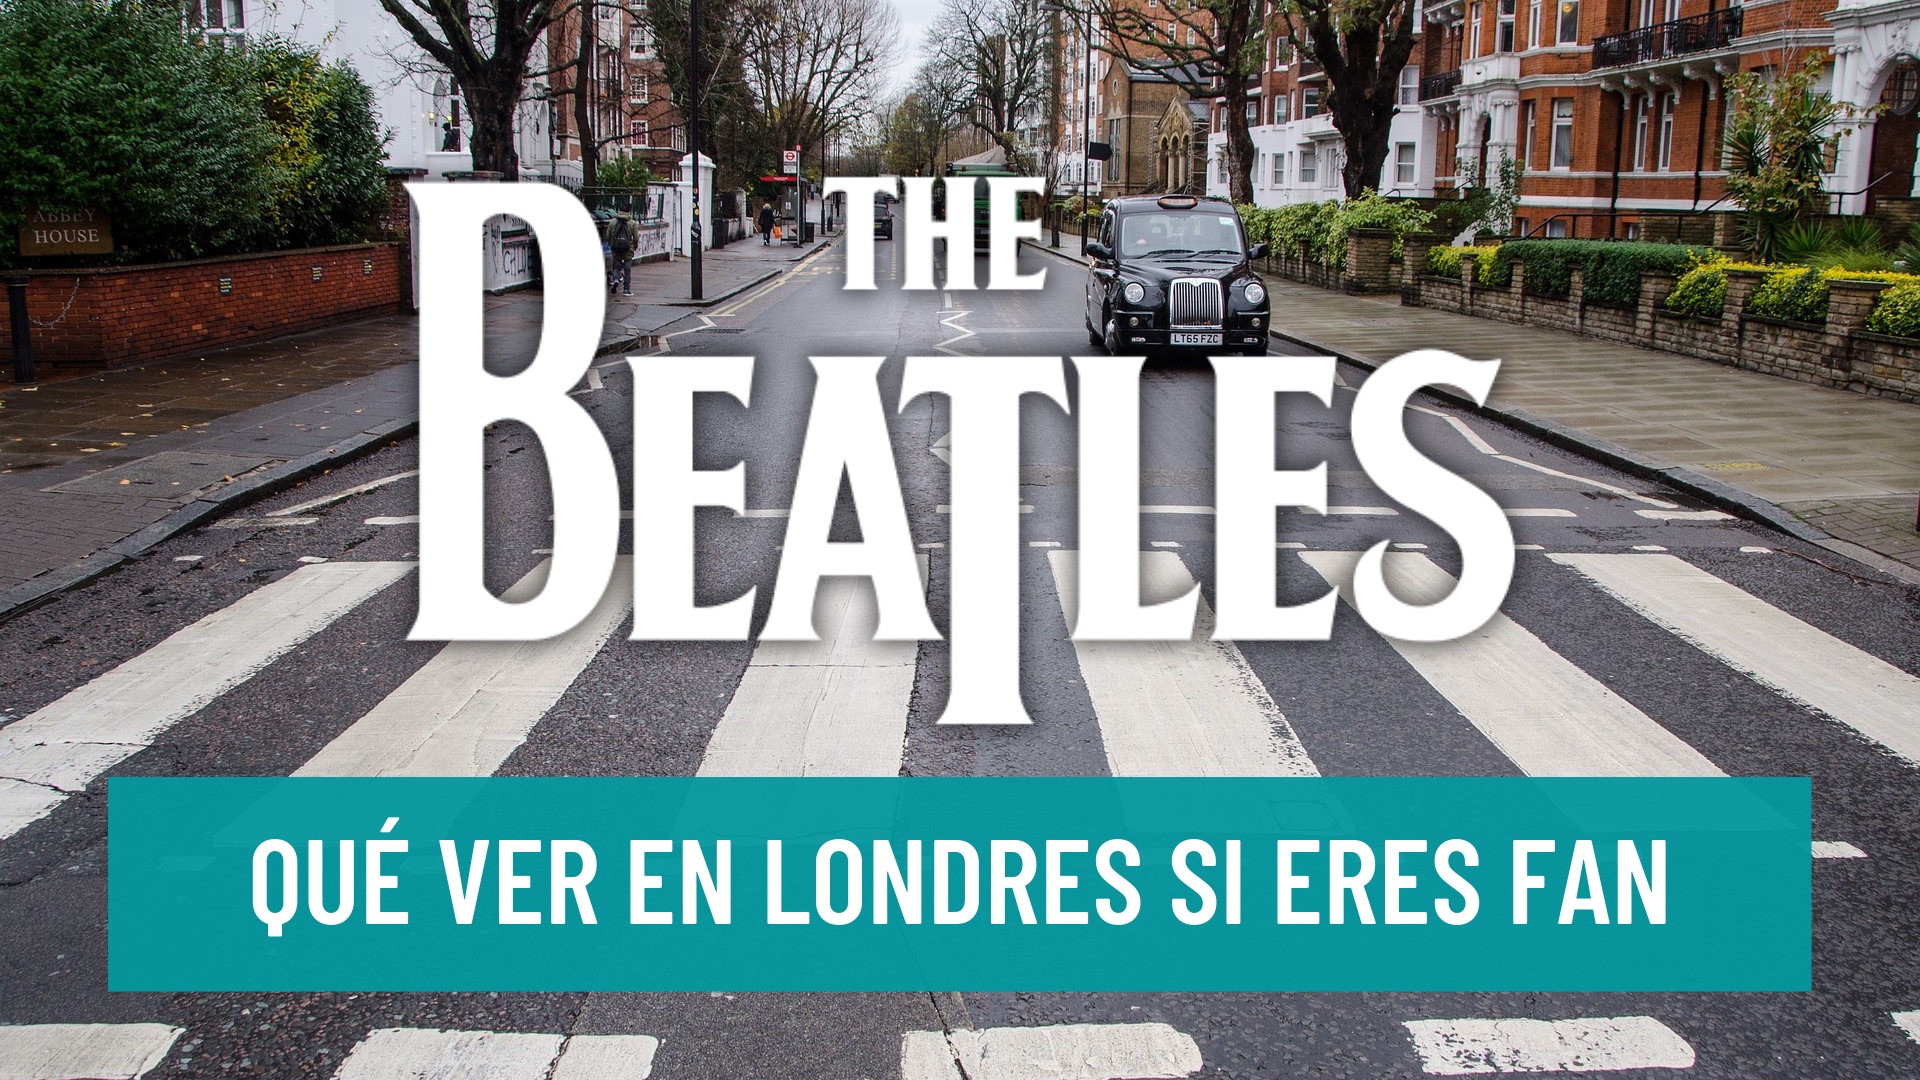 Qué ver en Londres si eres fan de Los Beatles